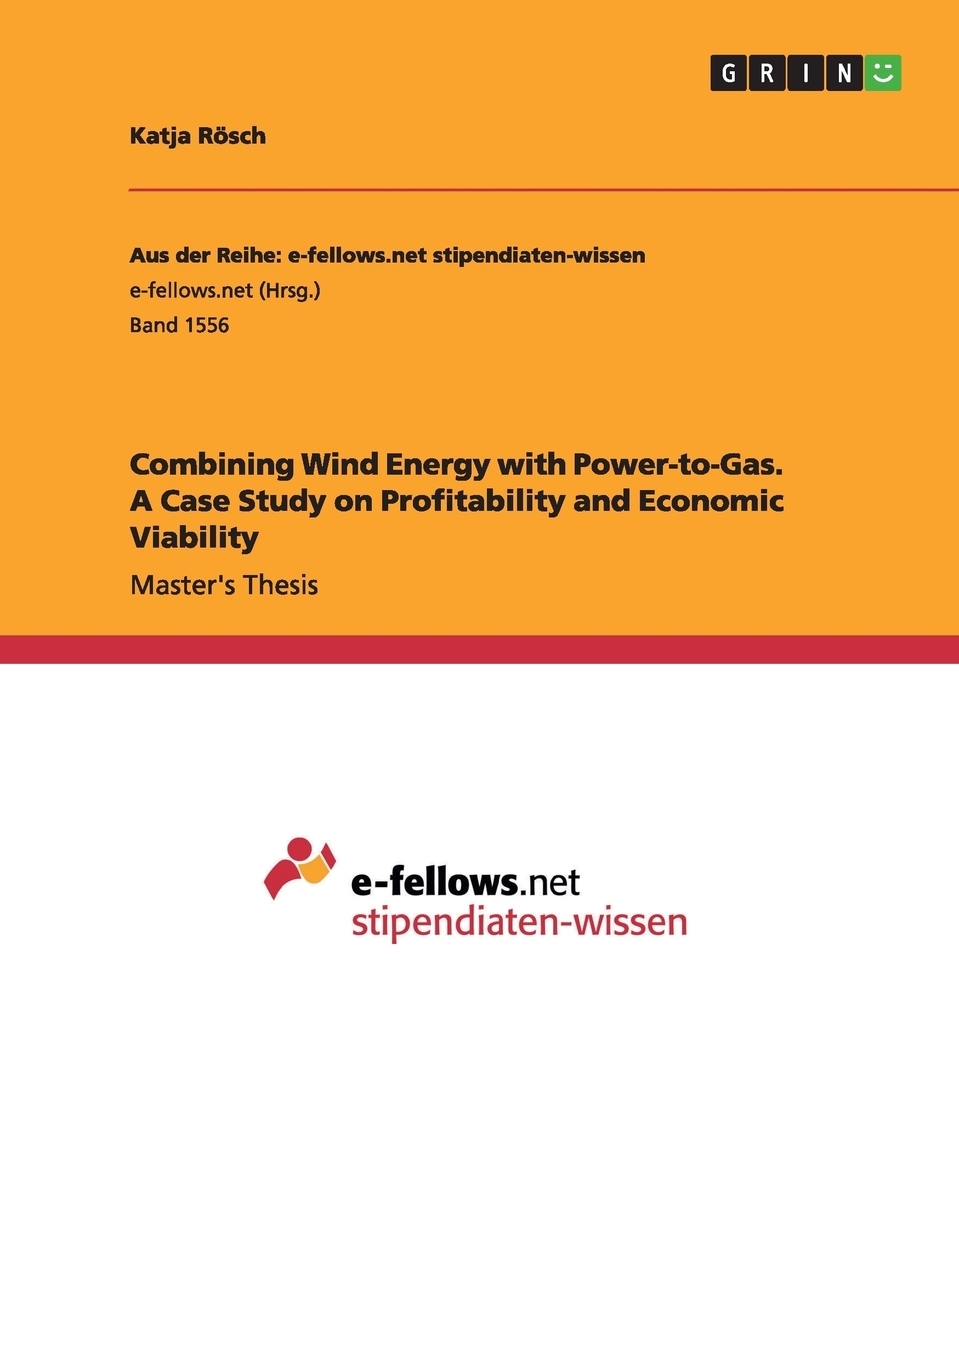 wind power profitability